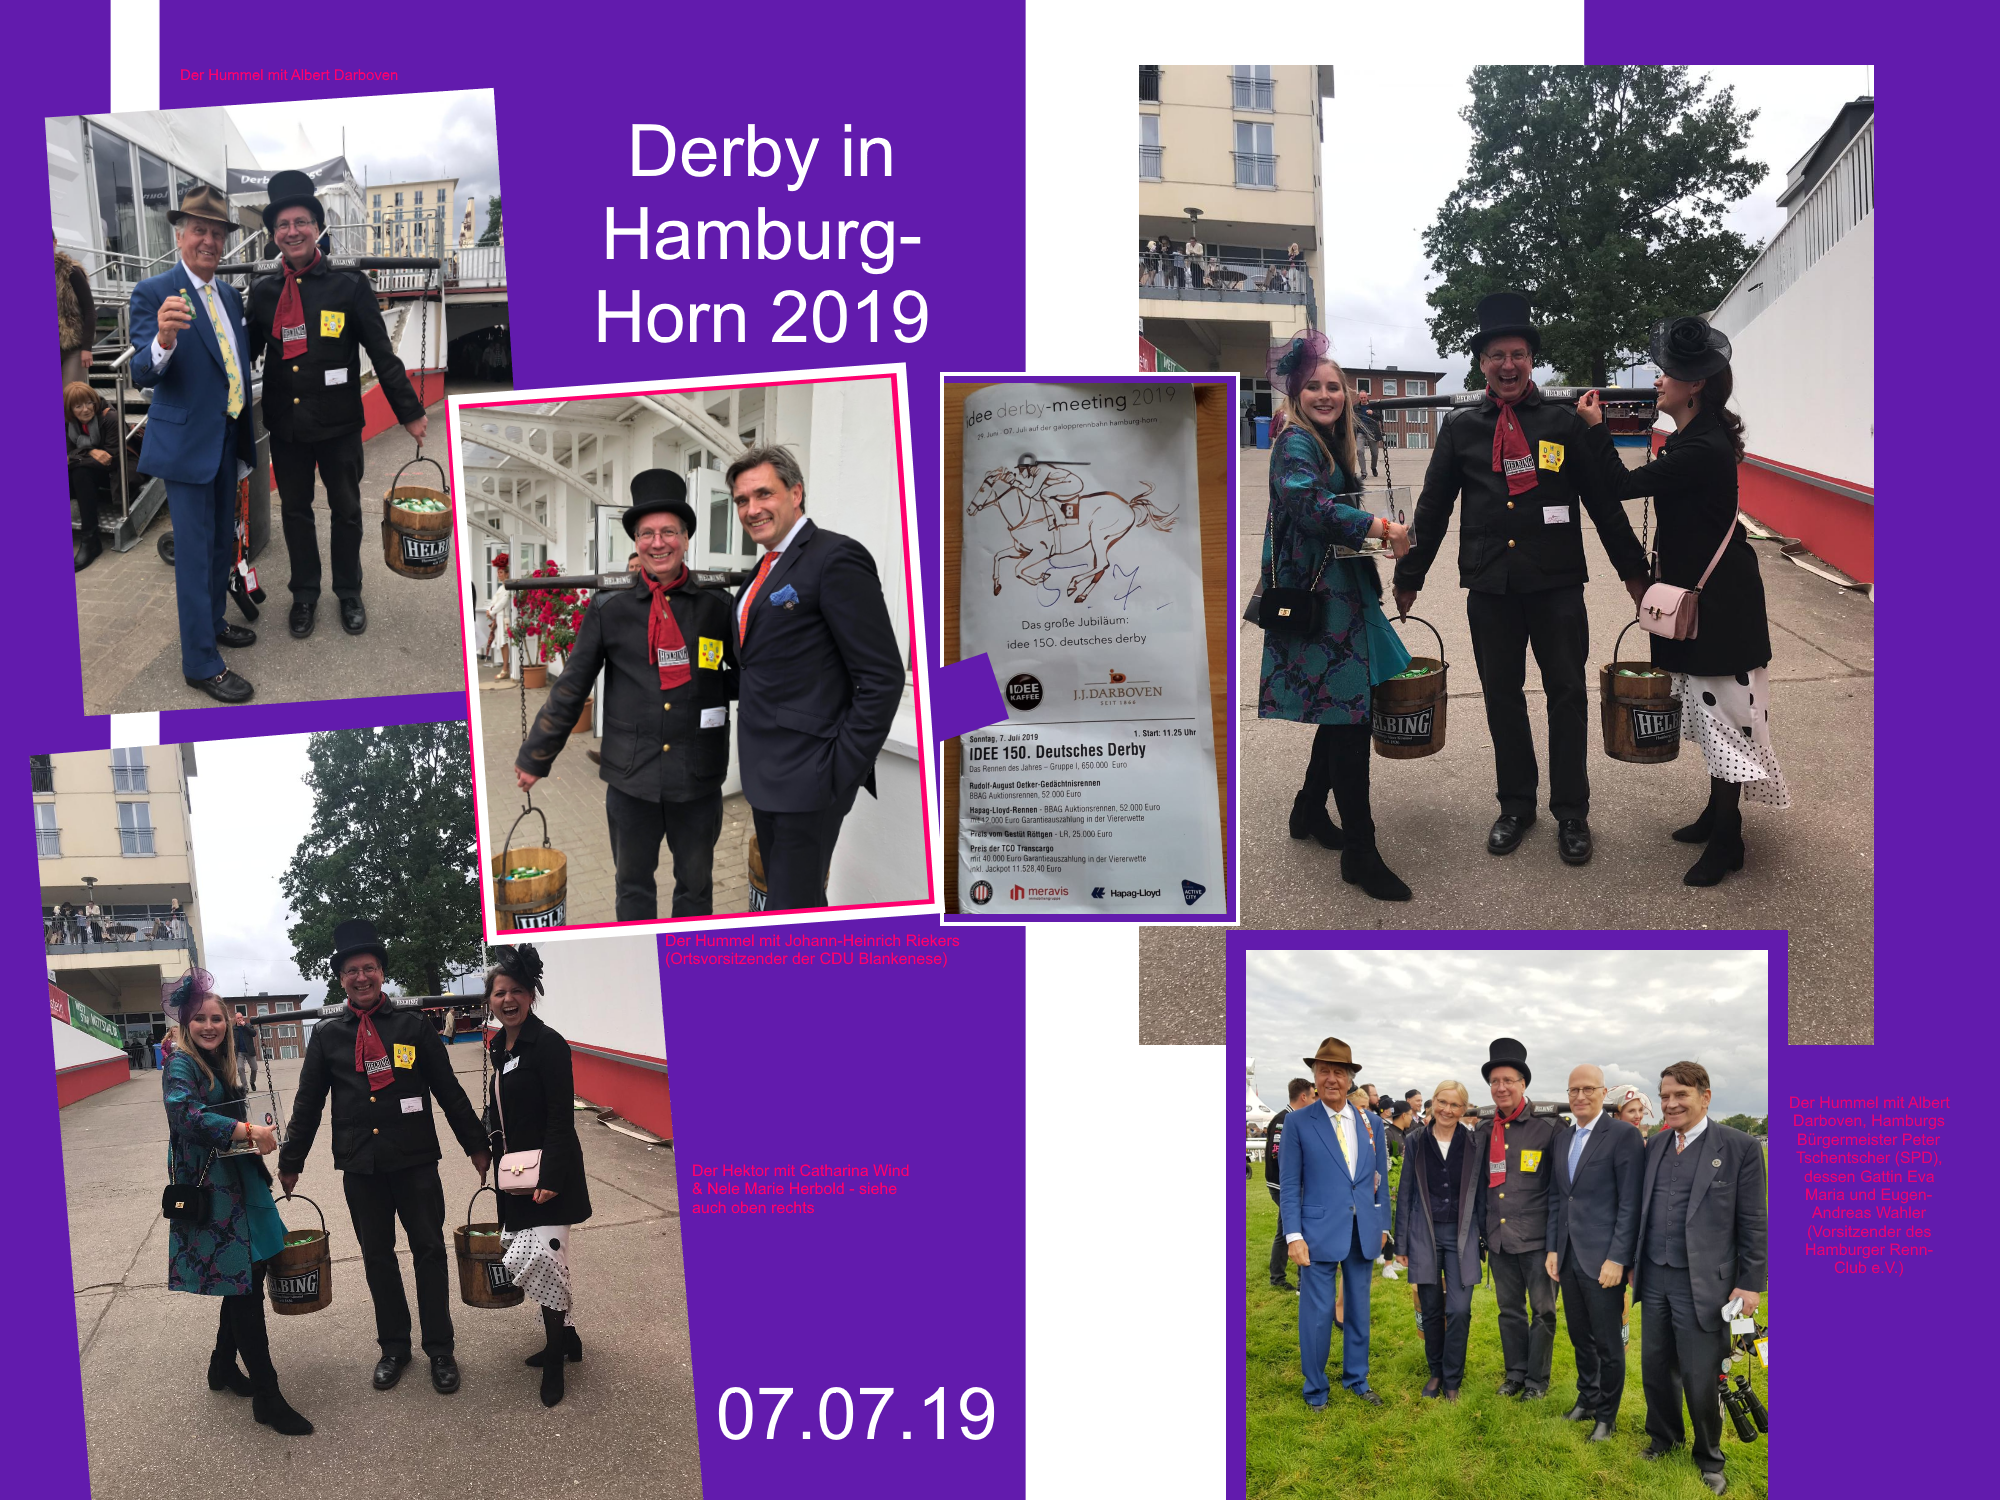 Derby in Hamburg-Horn 2019.